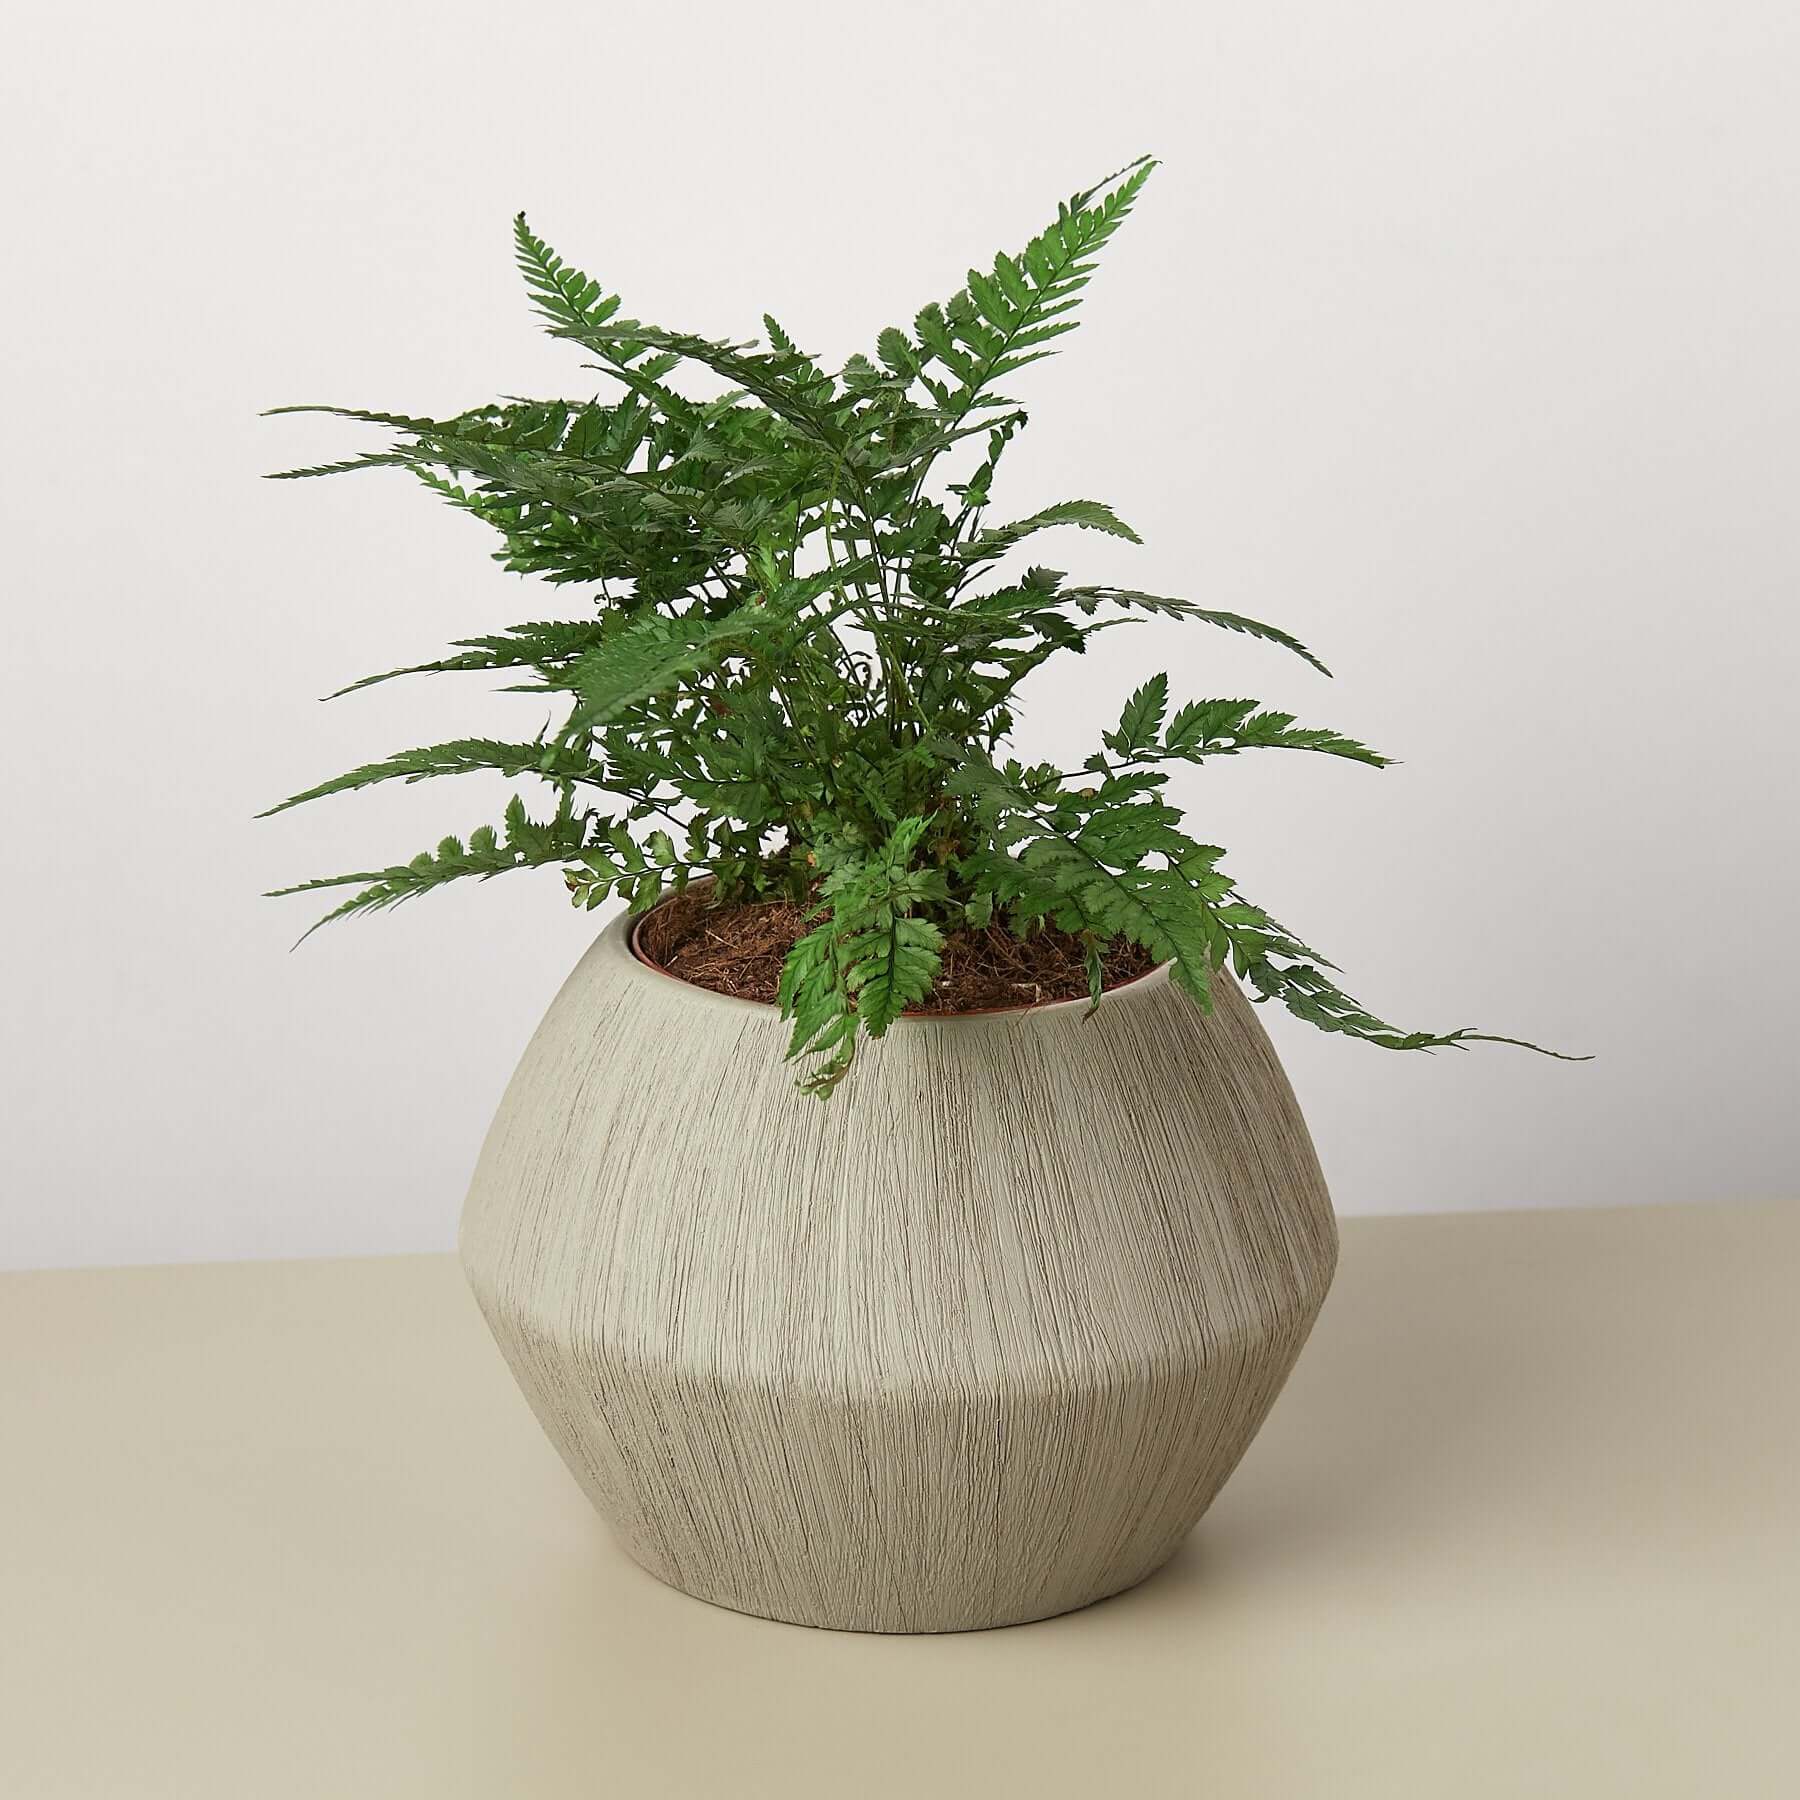 Modern Ceramic Planter | Modern house plants that clean the air